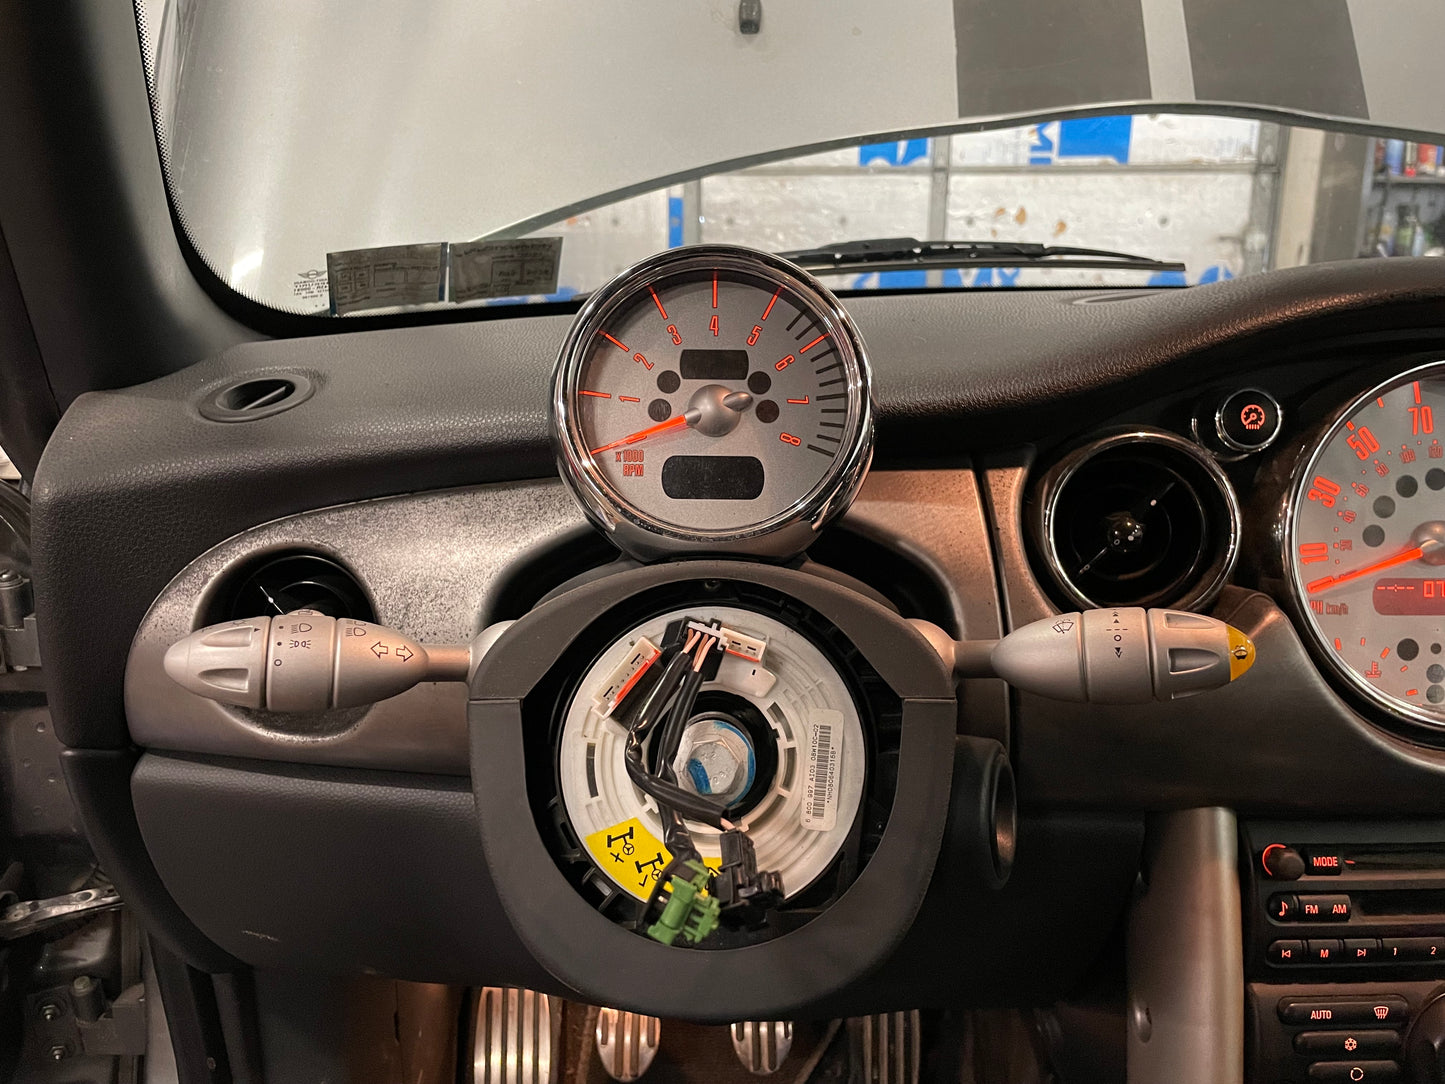 2008 MINI Cooper Convertible S, New Parts Car (October 2022) Stk #333